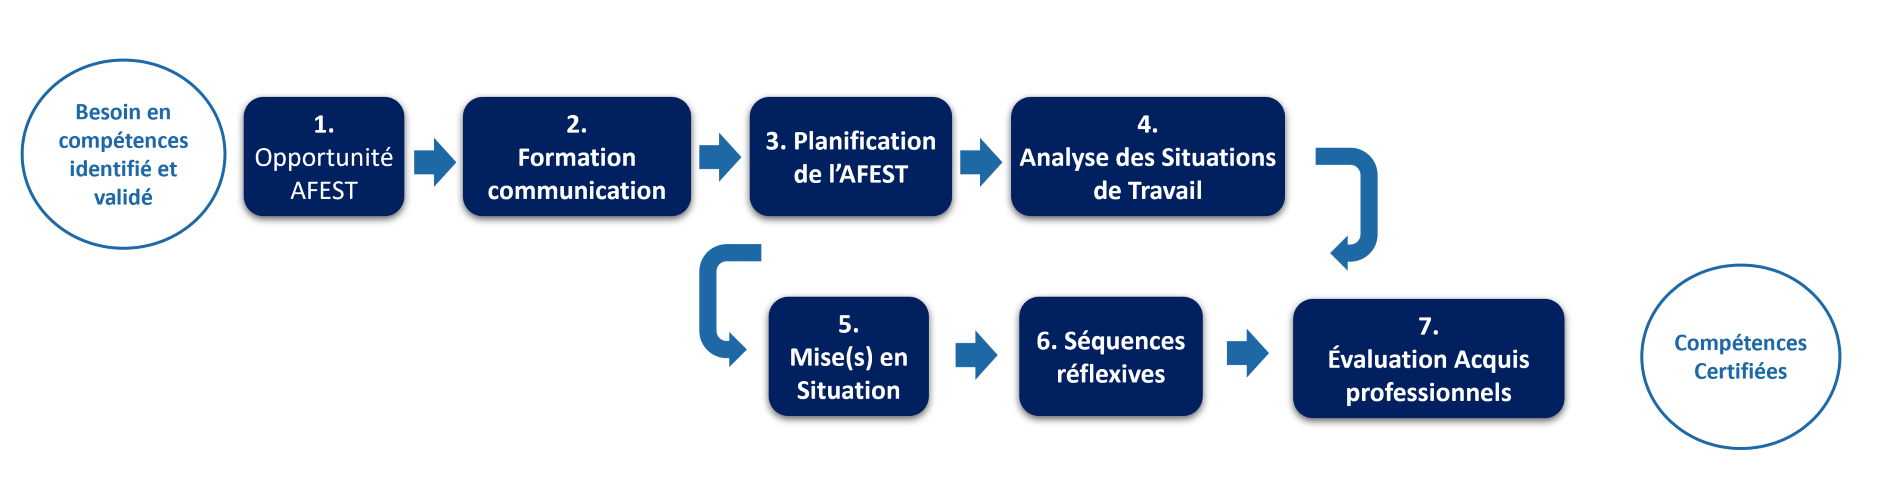 Les étapes d'un parcours de certification AFEST